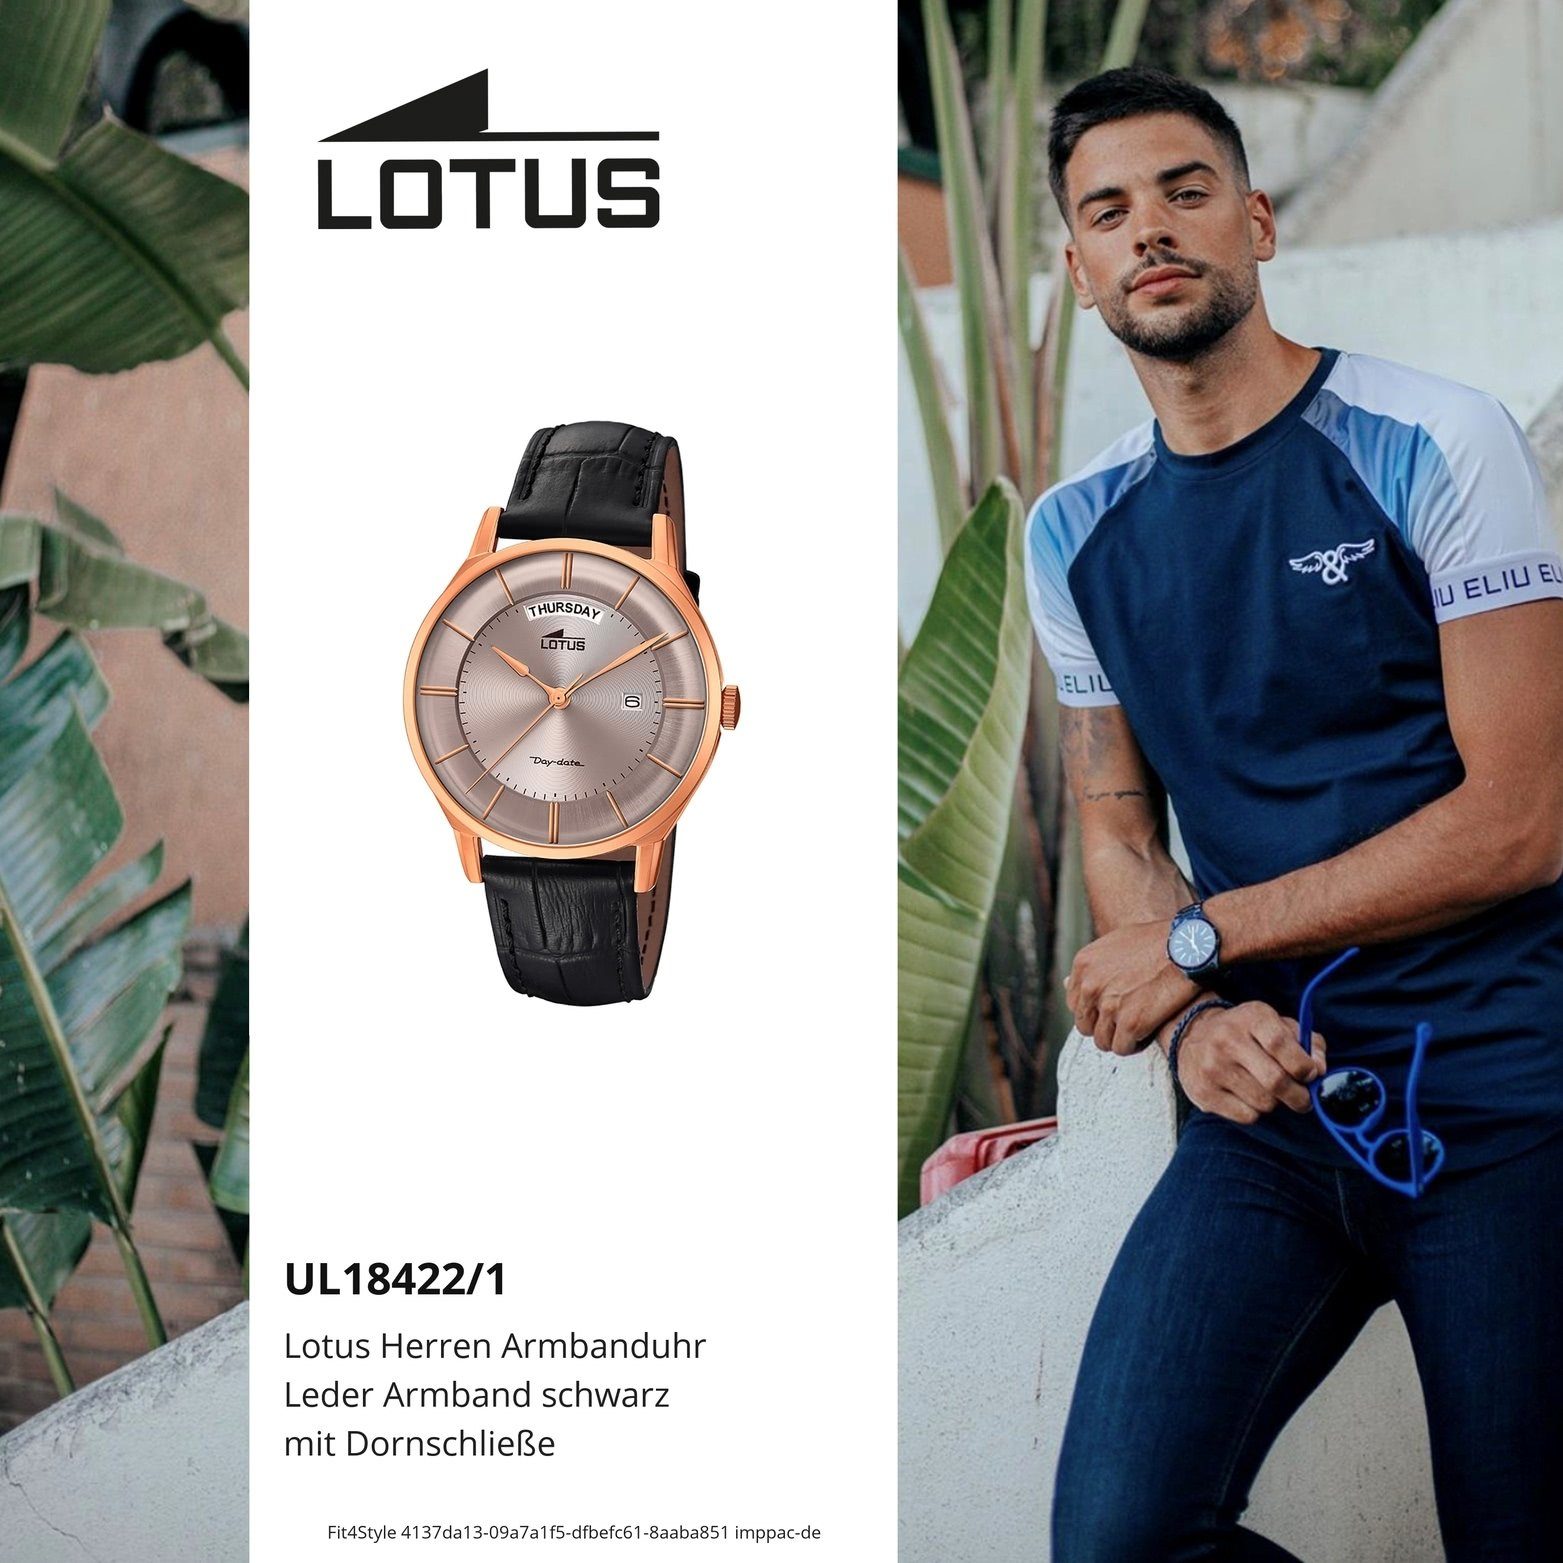 Lotus Quarzuhr Lotus (ca. Leder Elegant-S groß 40mm), Lederarmband, rundes Gehäuse, L18422/1, Herrenuhr Uhr Herren mit